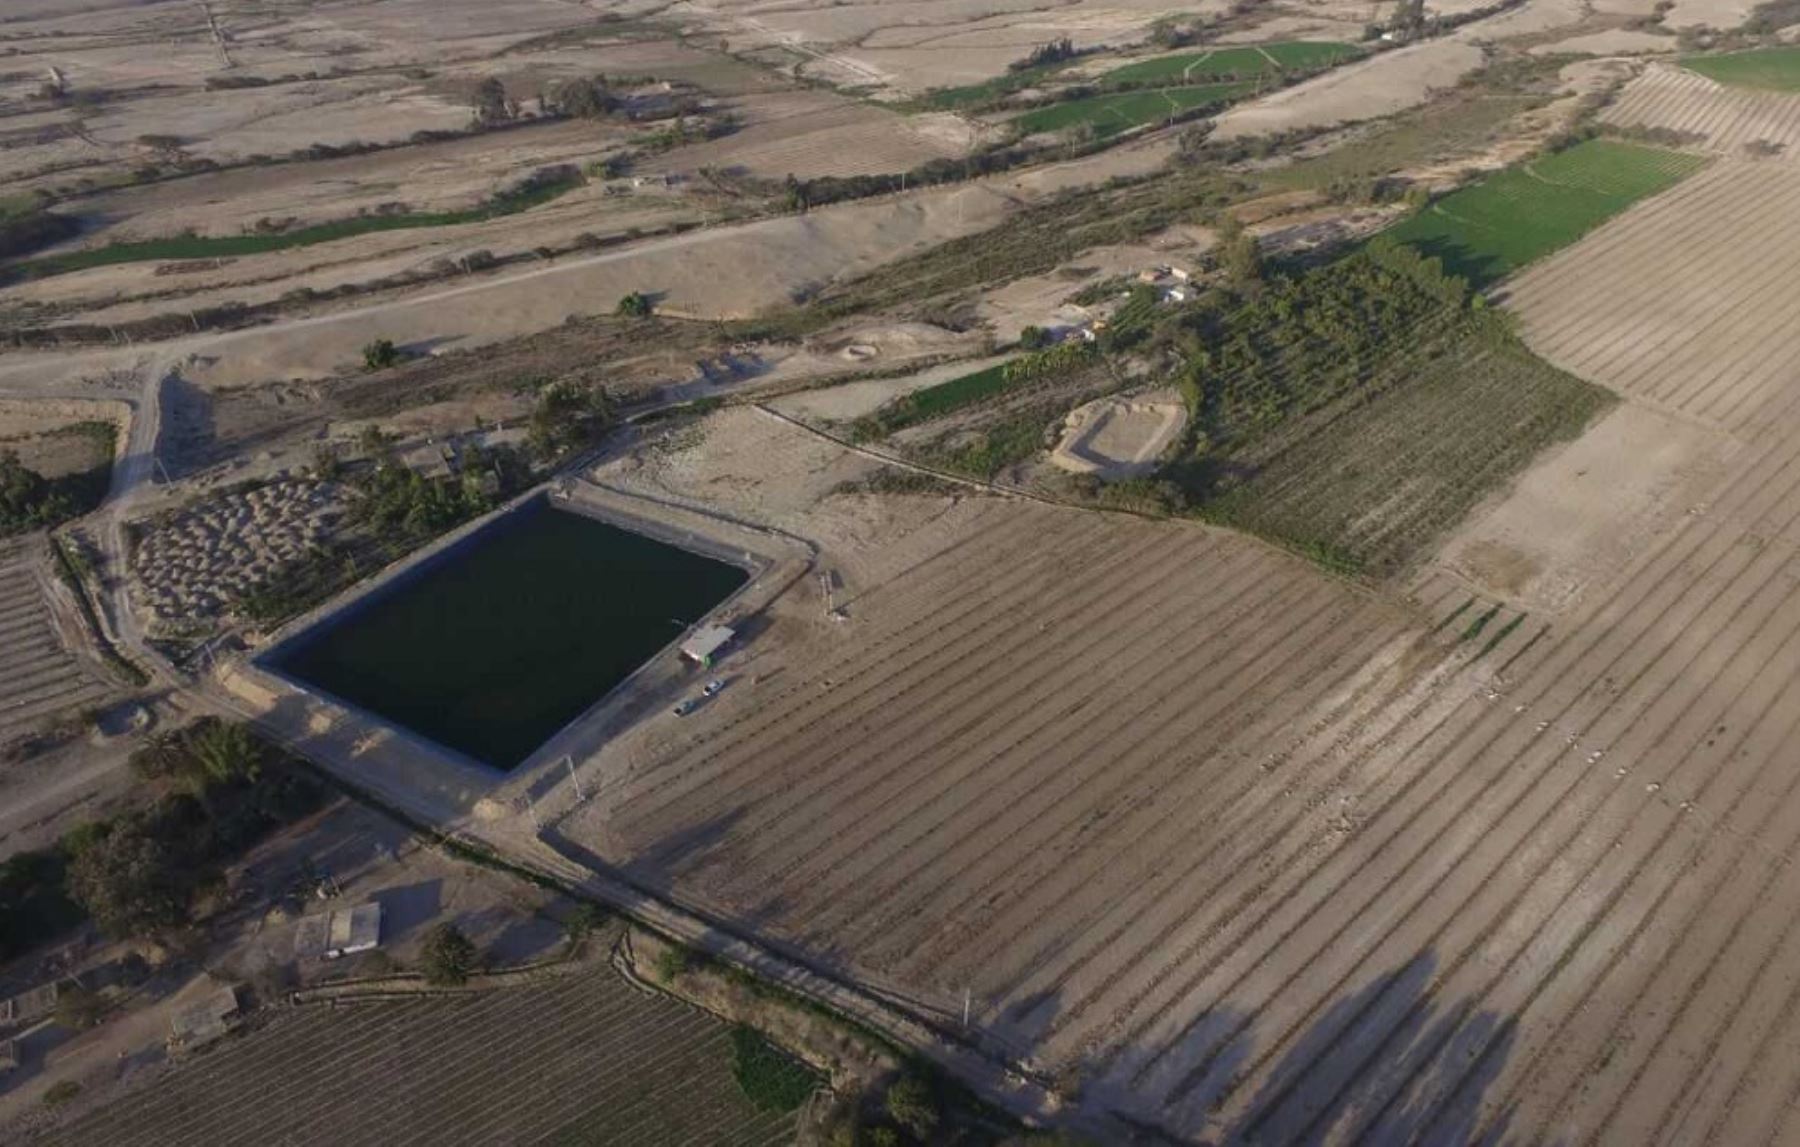 El Ministerio de Agricultura y Riego (Minagri) invierte más de 11.2 millones de soles en la instalación de un sistema de riego y habilitación de reservorios para potenciar la producción de 178 hectáreas de cultivo en la región de Ica, informó el titular del sector, José Hernández.